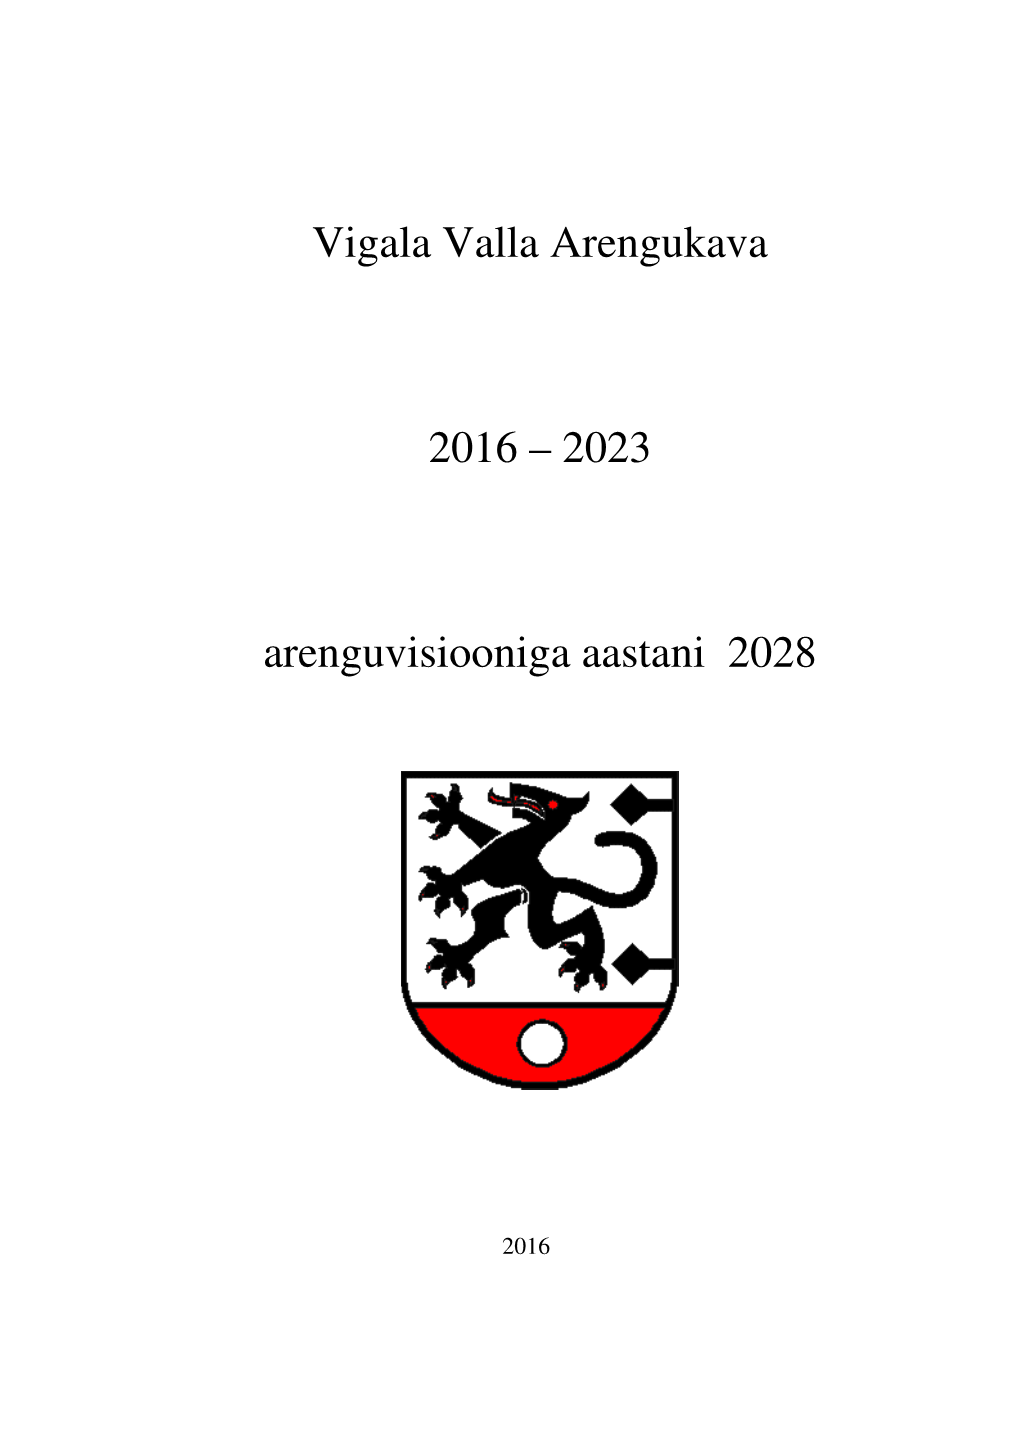 Vigala Valla Arengukava 2016